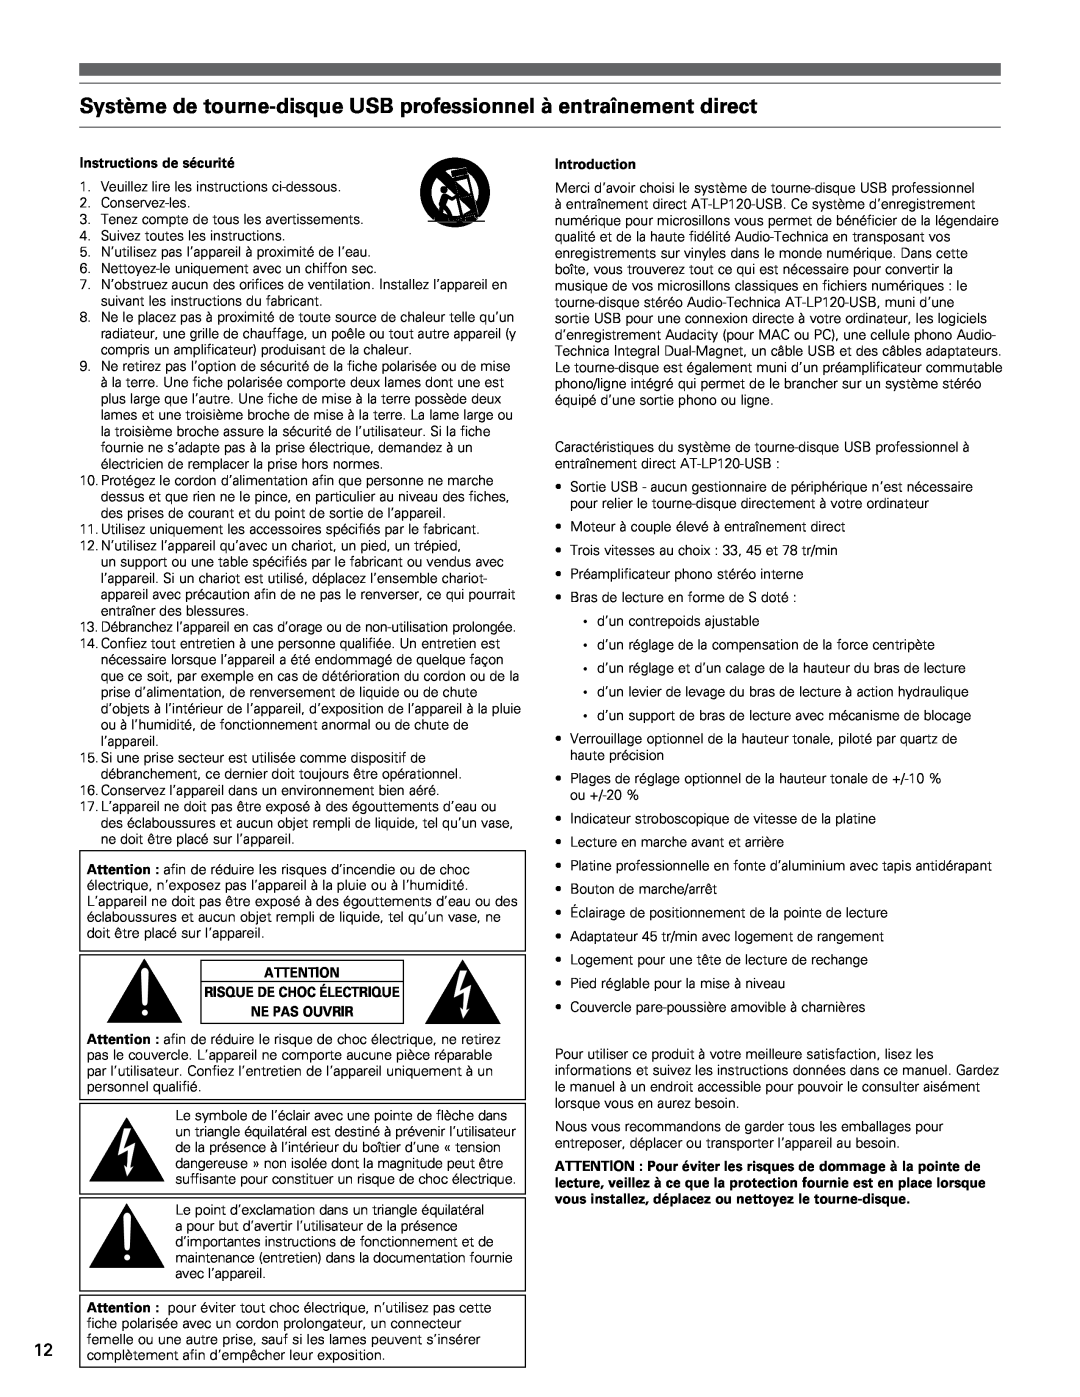 Audio-Technica AT-LP120-USB manual Instructions de sécurité, Risque De Choc Électrique Ne Pas Ouvrir, Introduction 